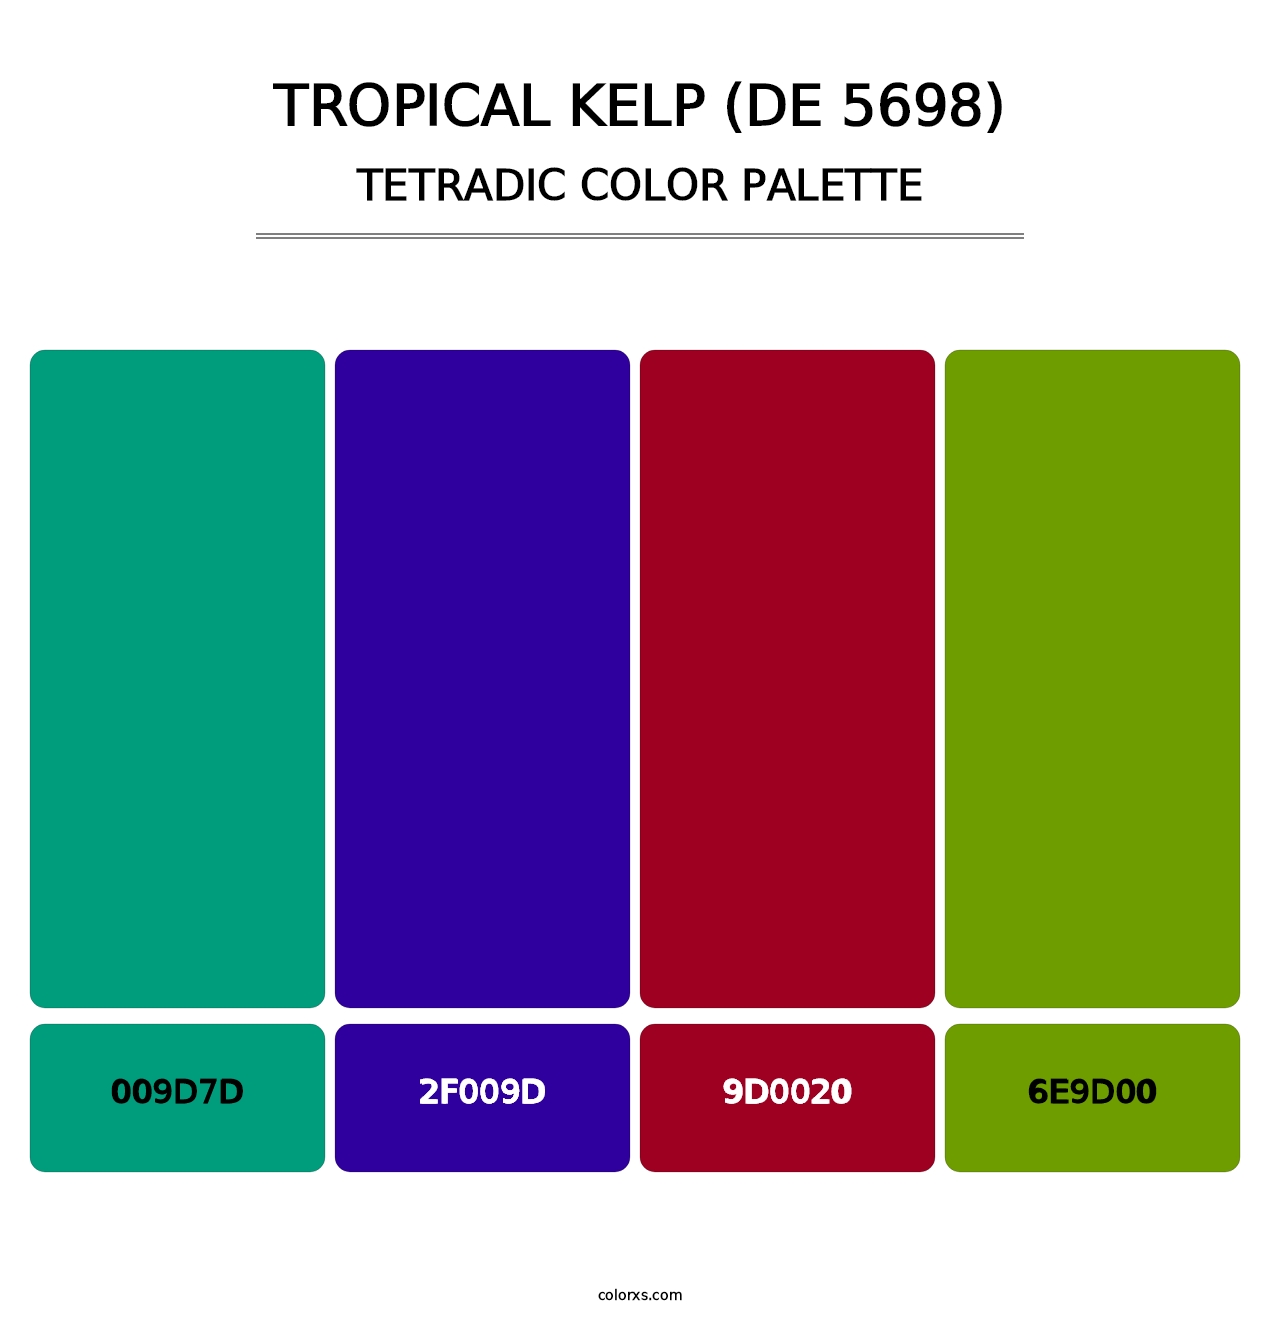 Tropical Kelp (DE 5698) - Tetradic Color Palette